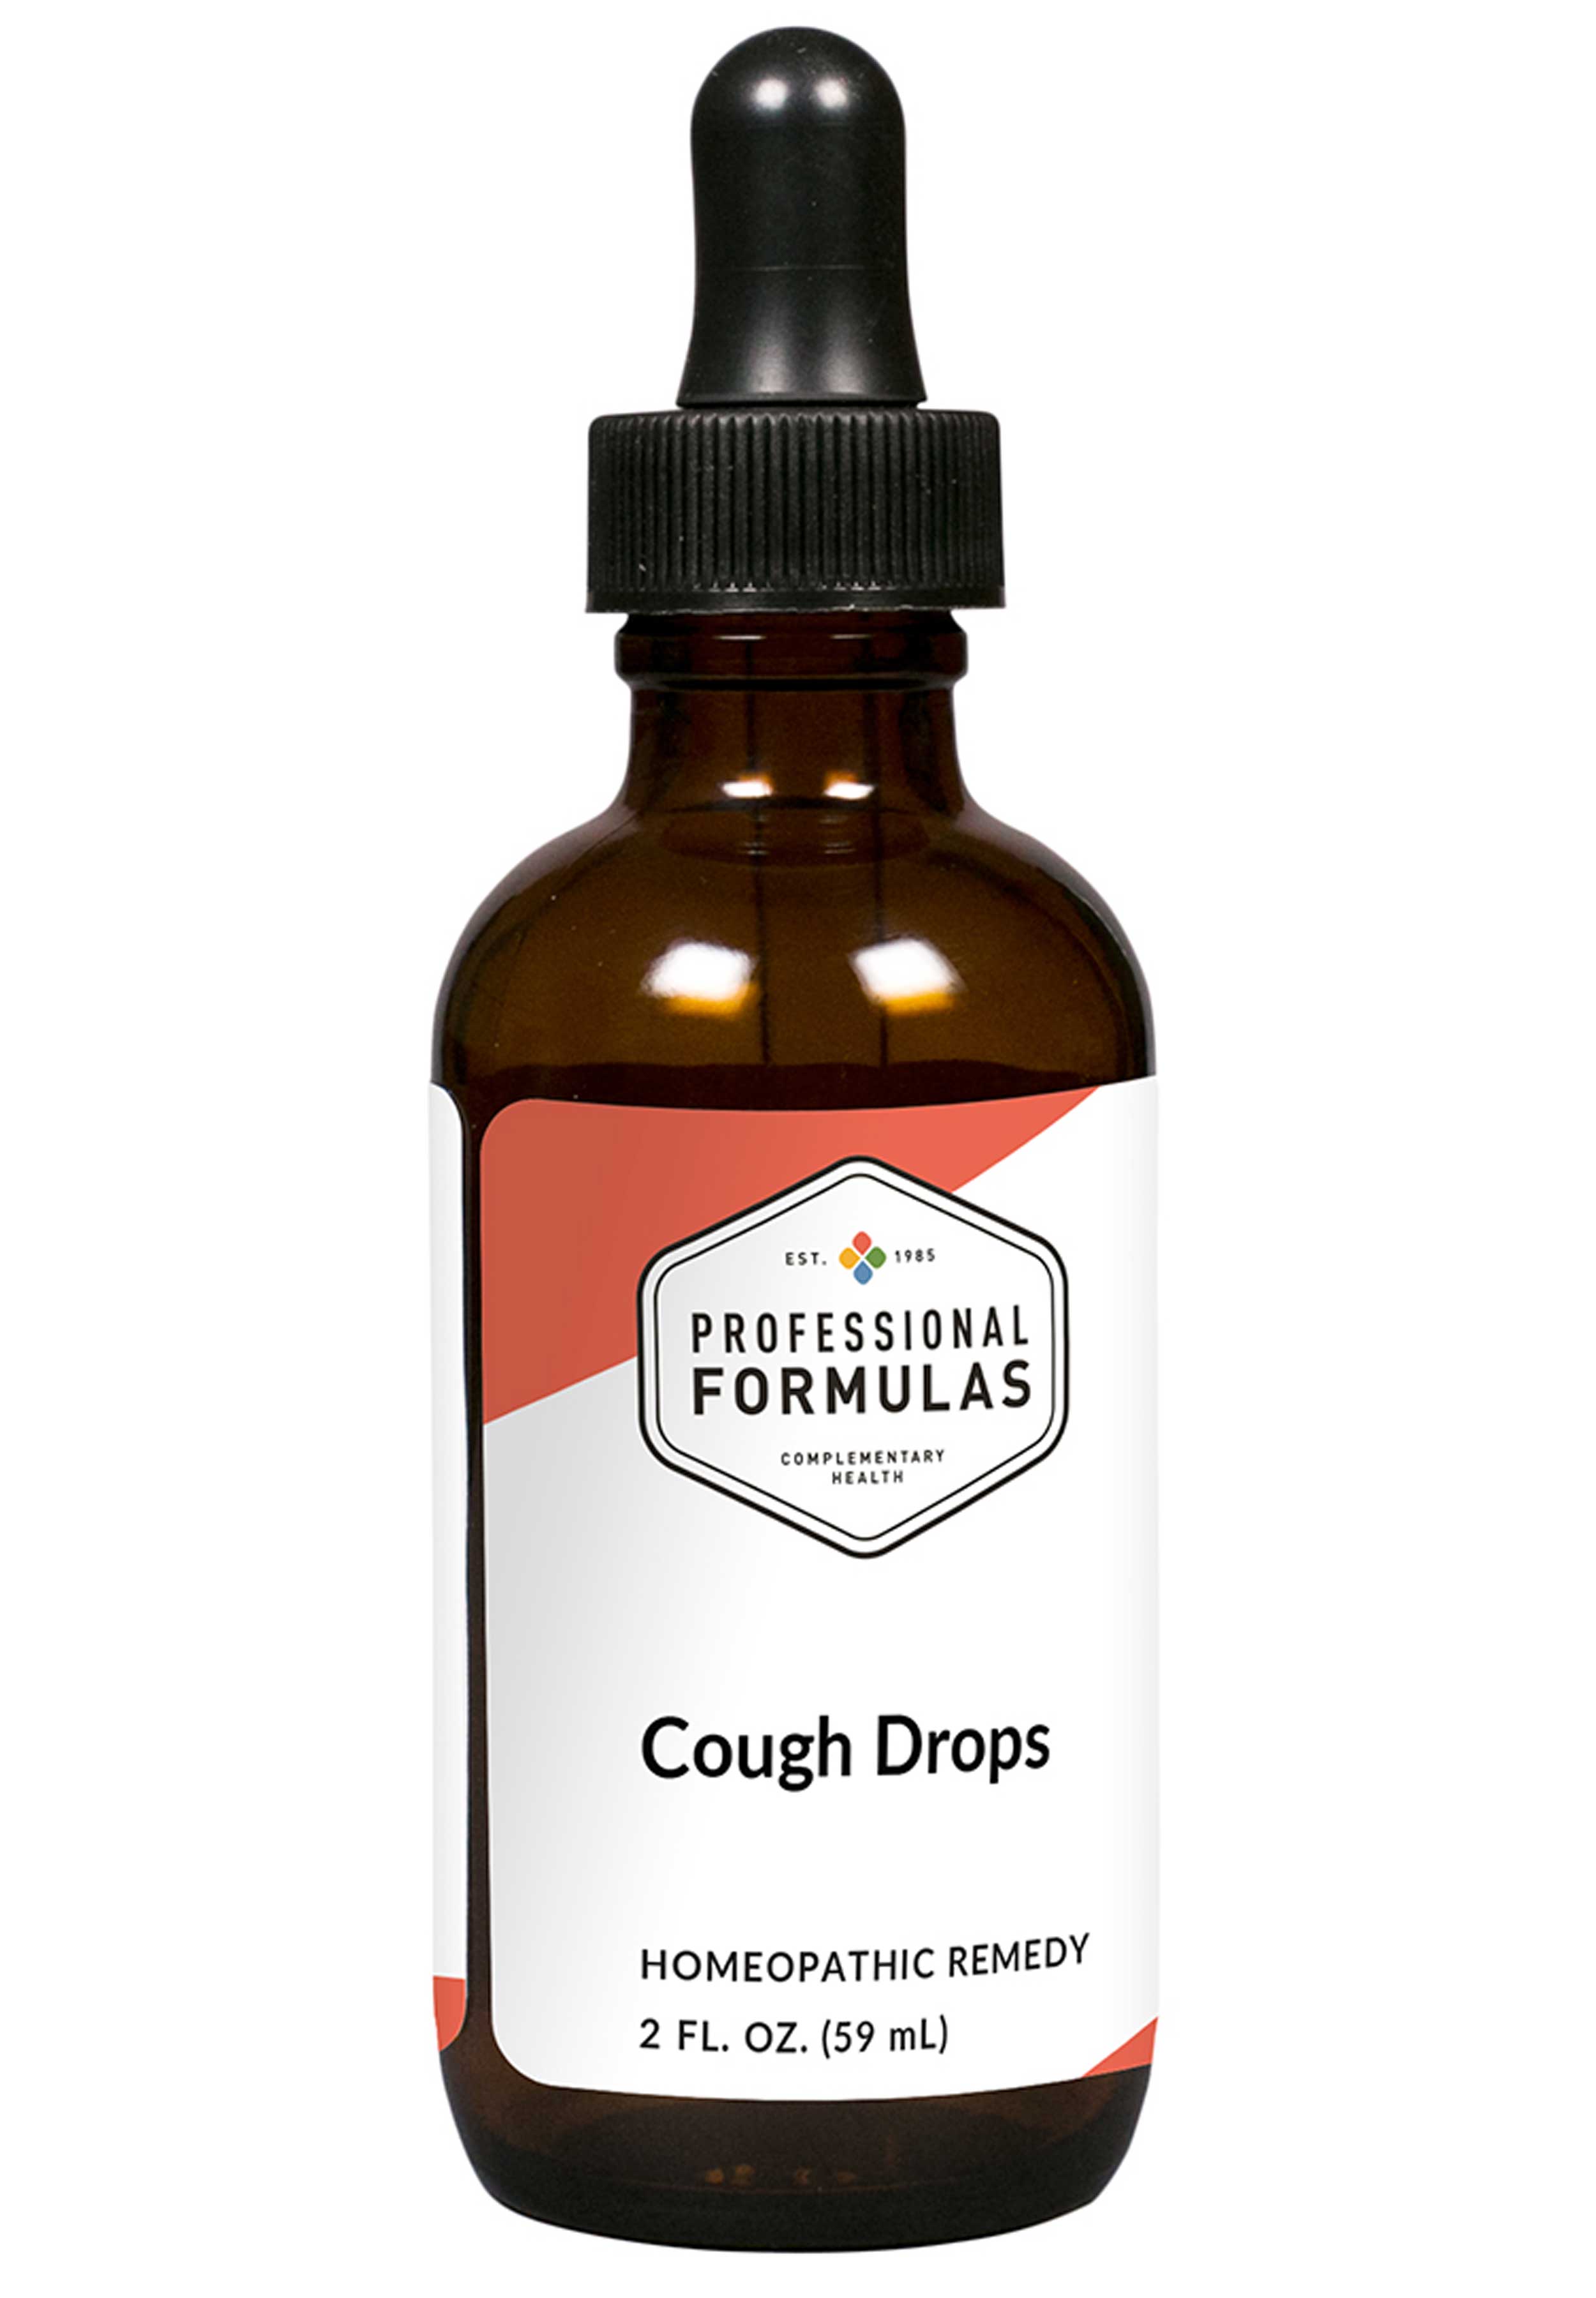 Professional Formulas Cough Drops